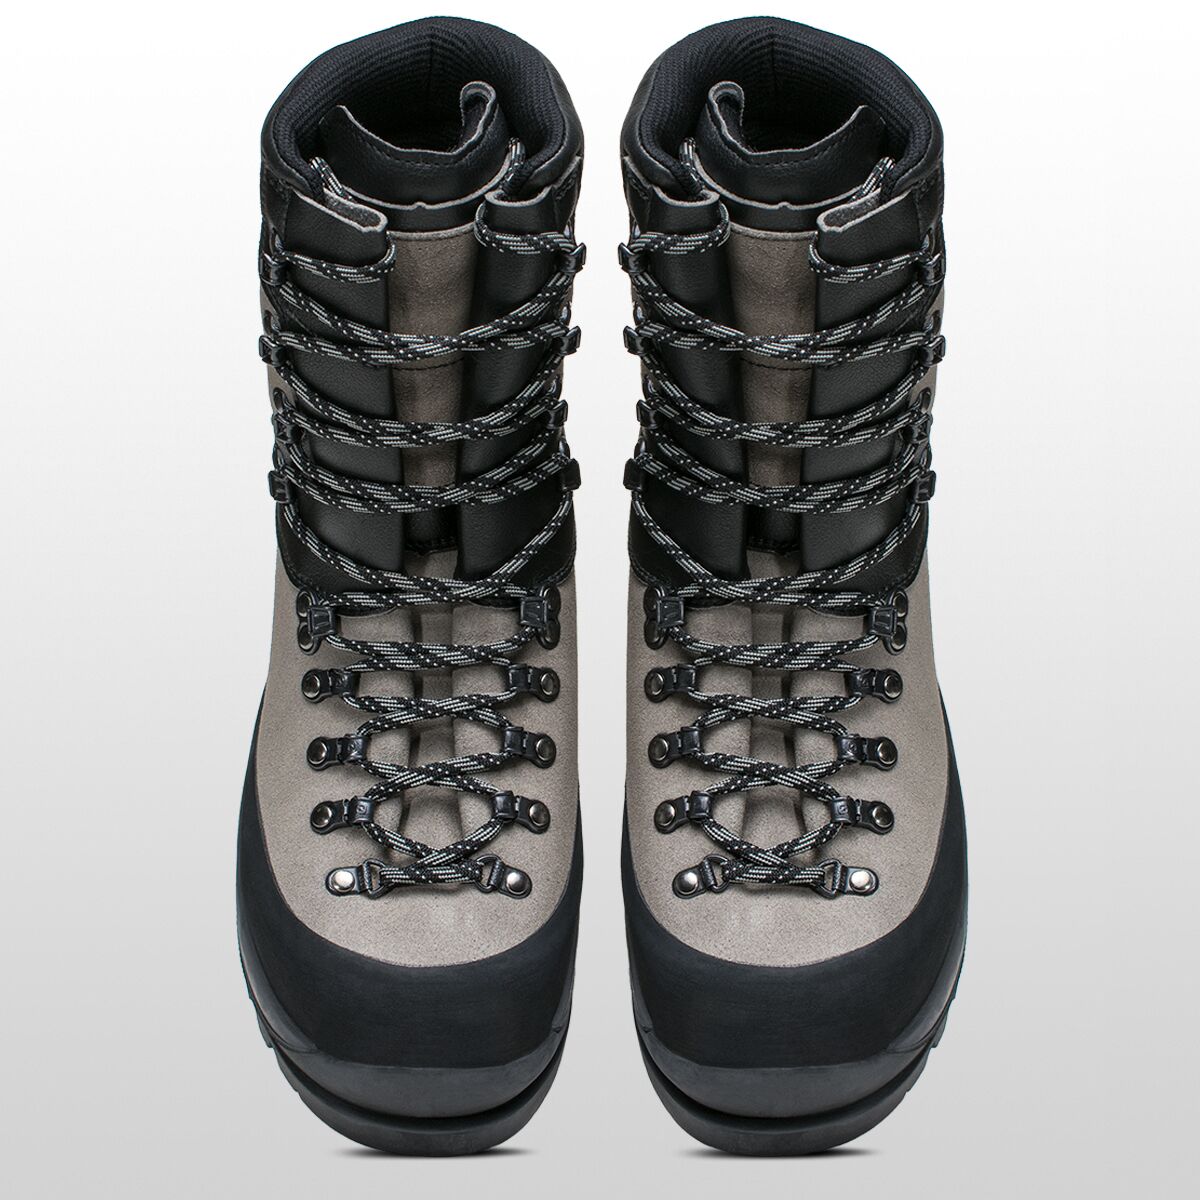 Scarpa Wrangell GTX Boot - Footwear